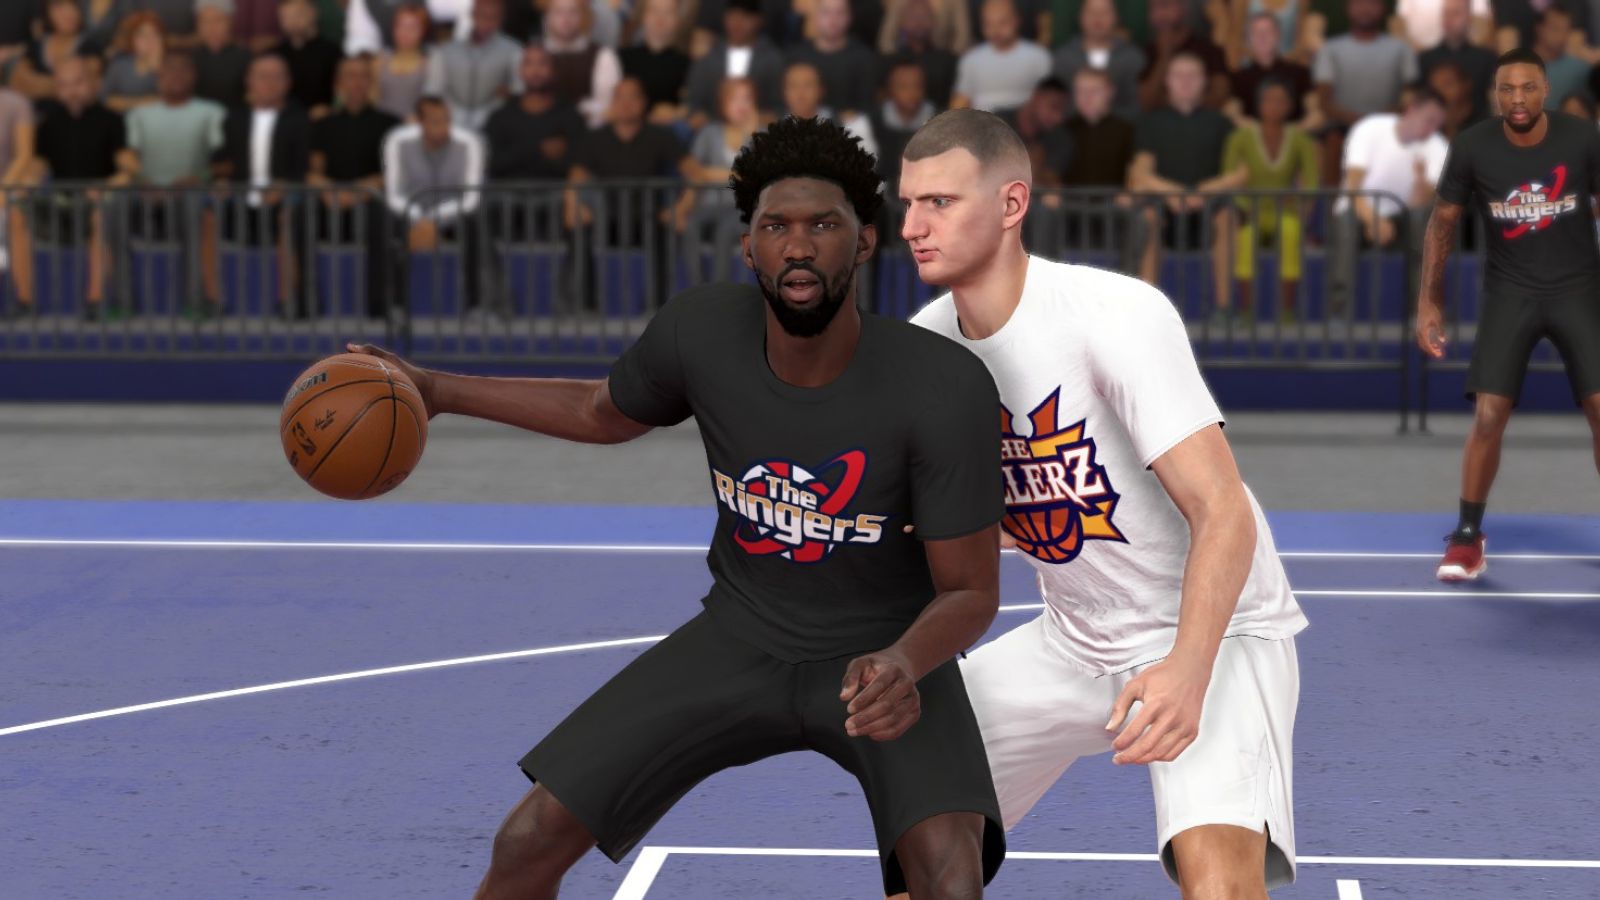 Gracze NBA 2K24 krytykują „okropny” styl gry wielkiego człowieka jako najgorszy w historii